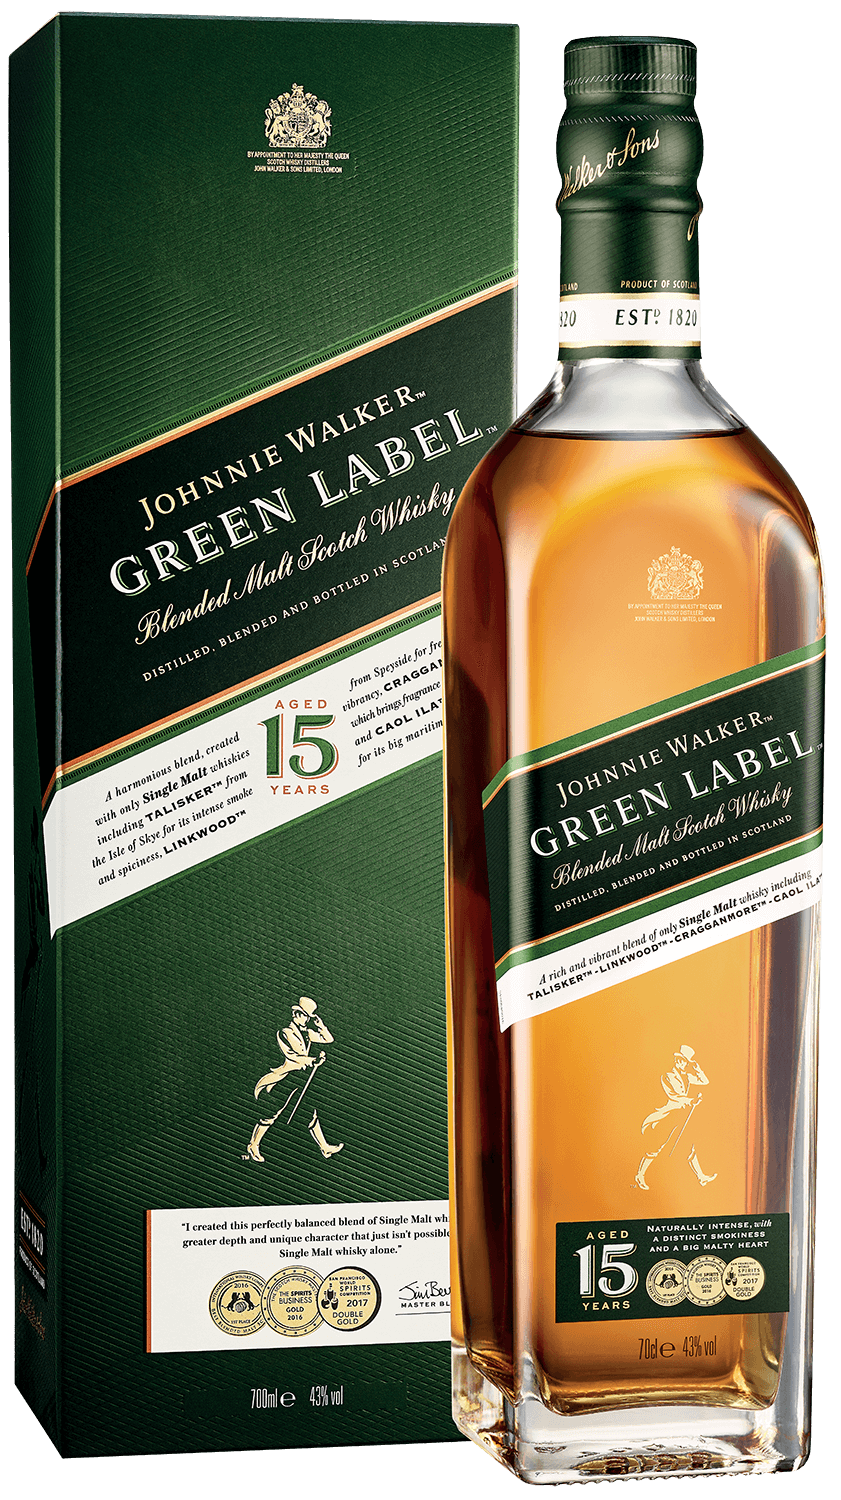 Johnnie Walker Green Label Blended Malt Scotch Whisky (gift box) the naked grouse blended malt scotch whisky gift box